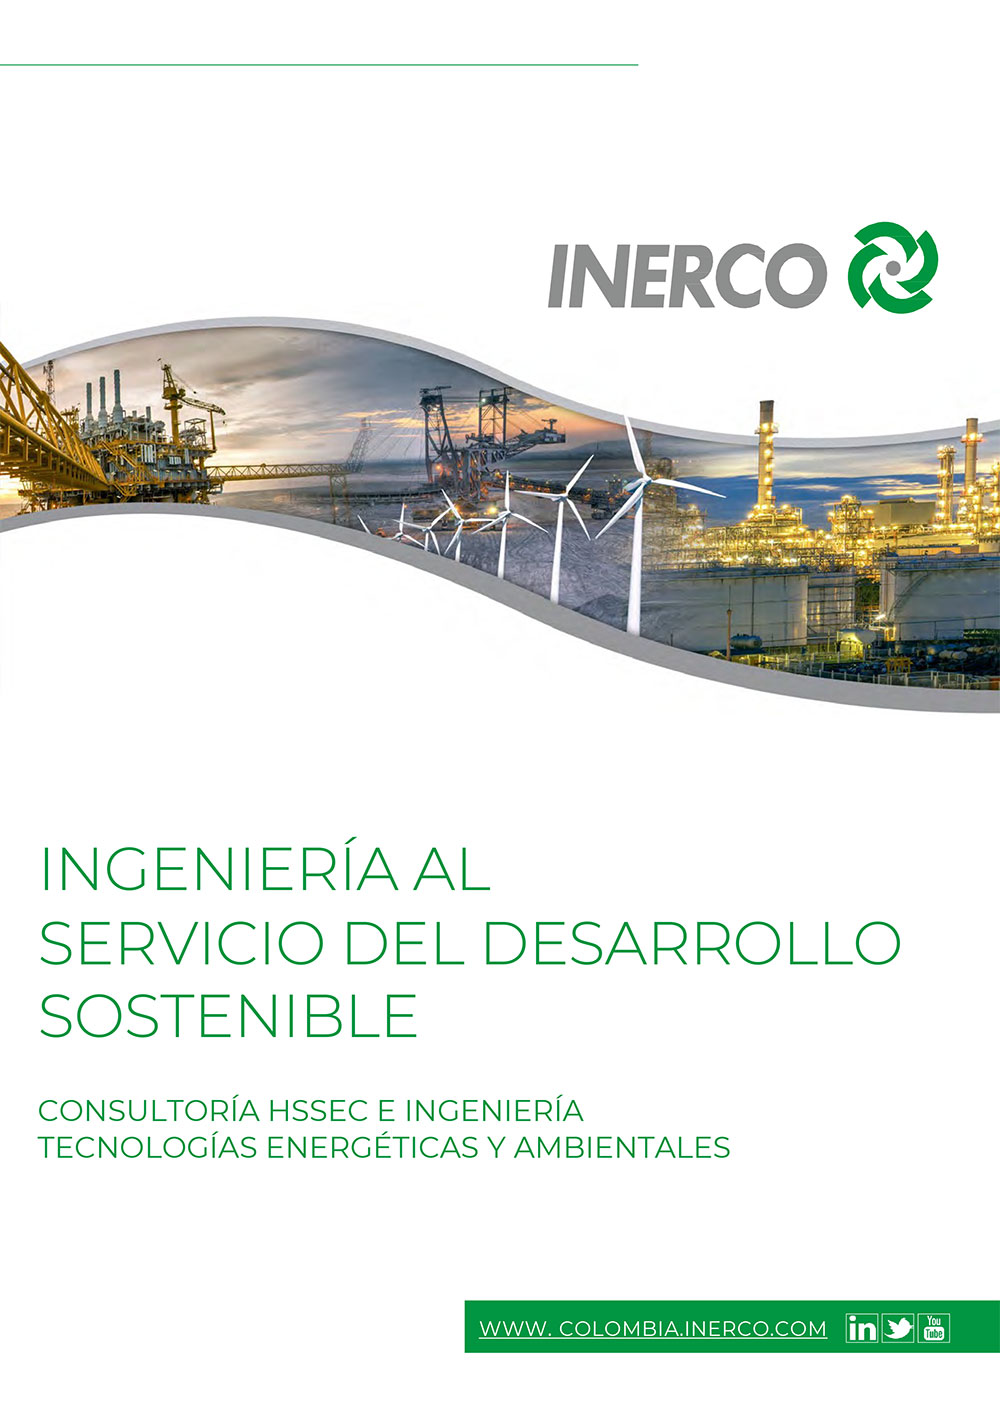 Brochure INERCO Colombia Ingenieria al servicio del desarrollo sostenible